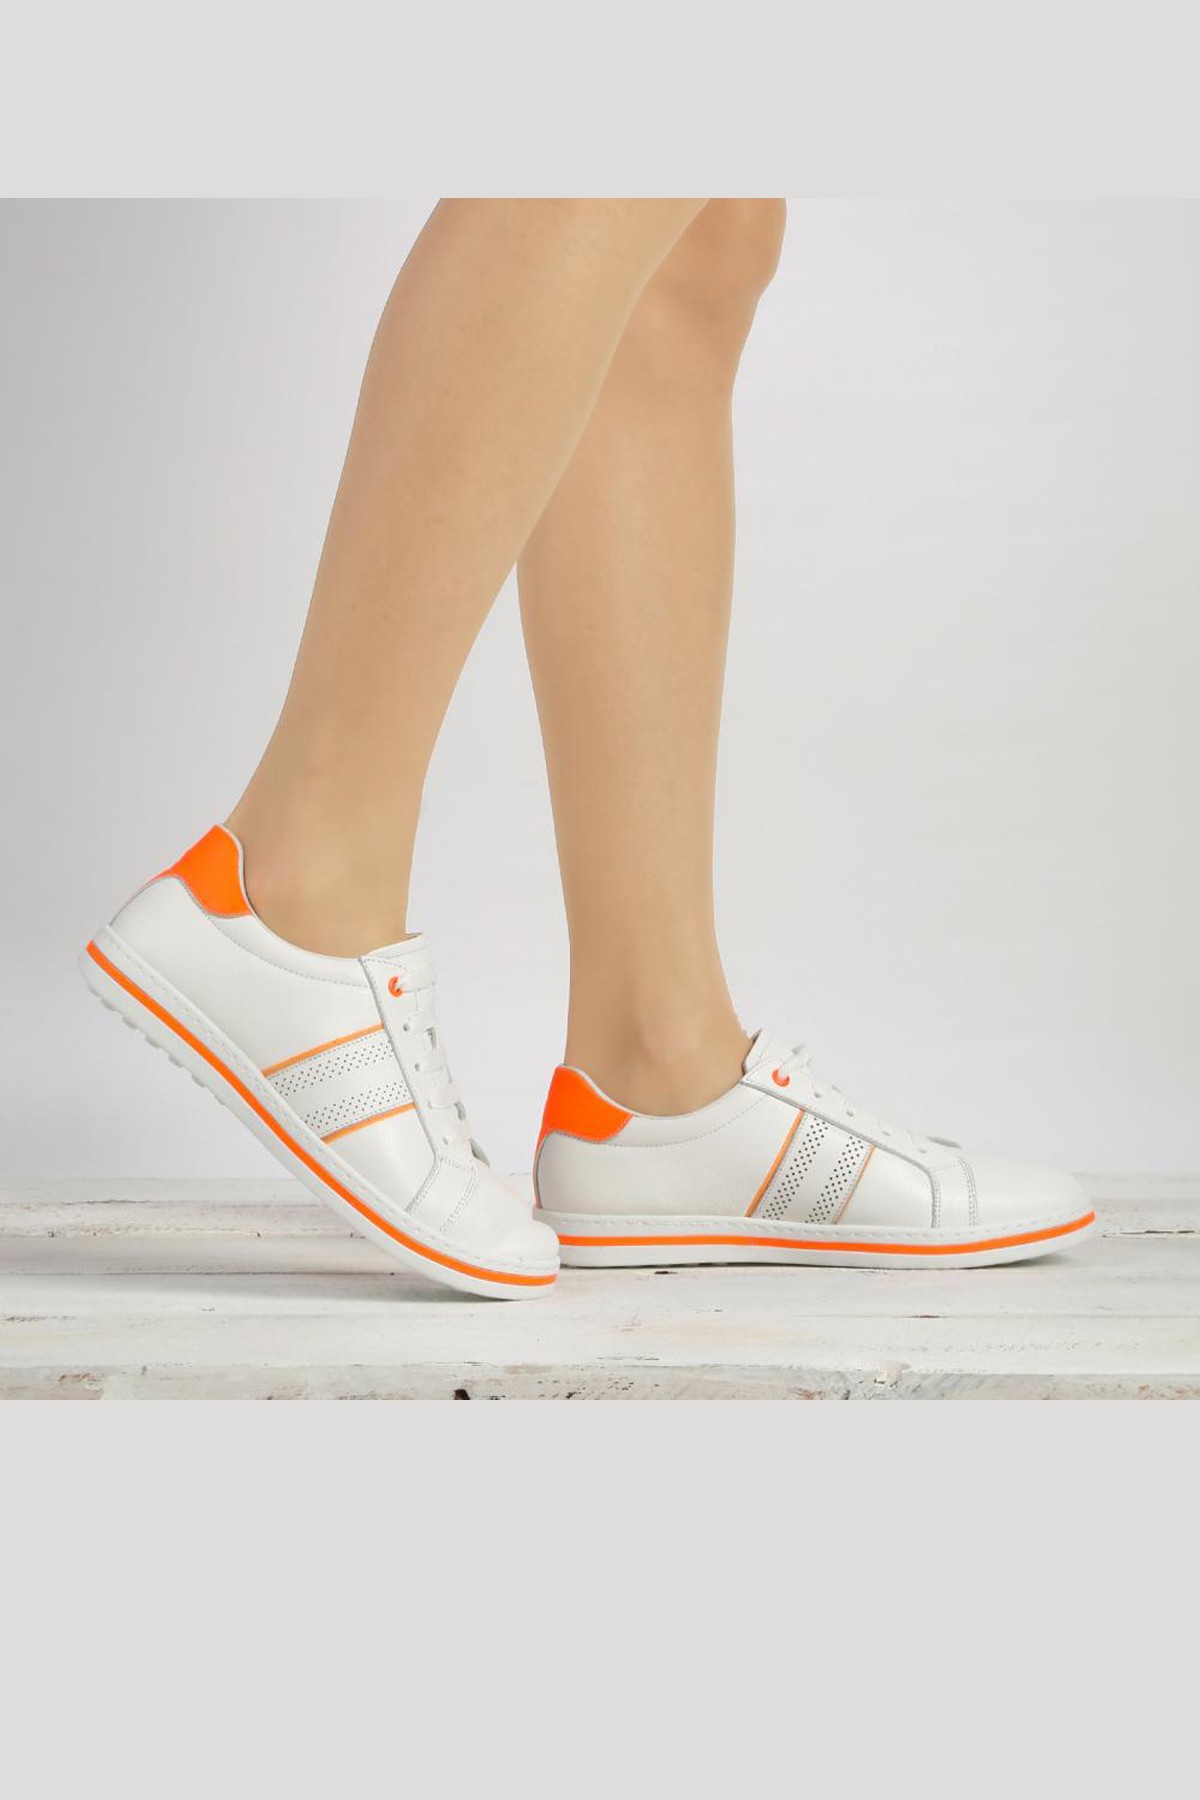 Cooliza Hakiki Deri Bağcıklı Renkli Rahat Kadın Günlük Yürüyüş Spor Ayakkabı - Beyaz-Neon Oranj